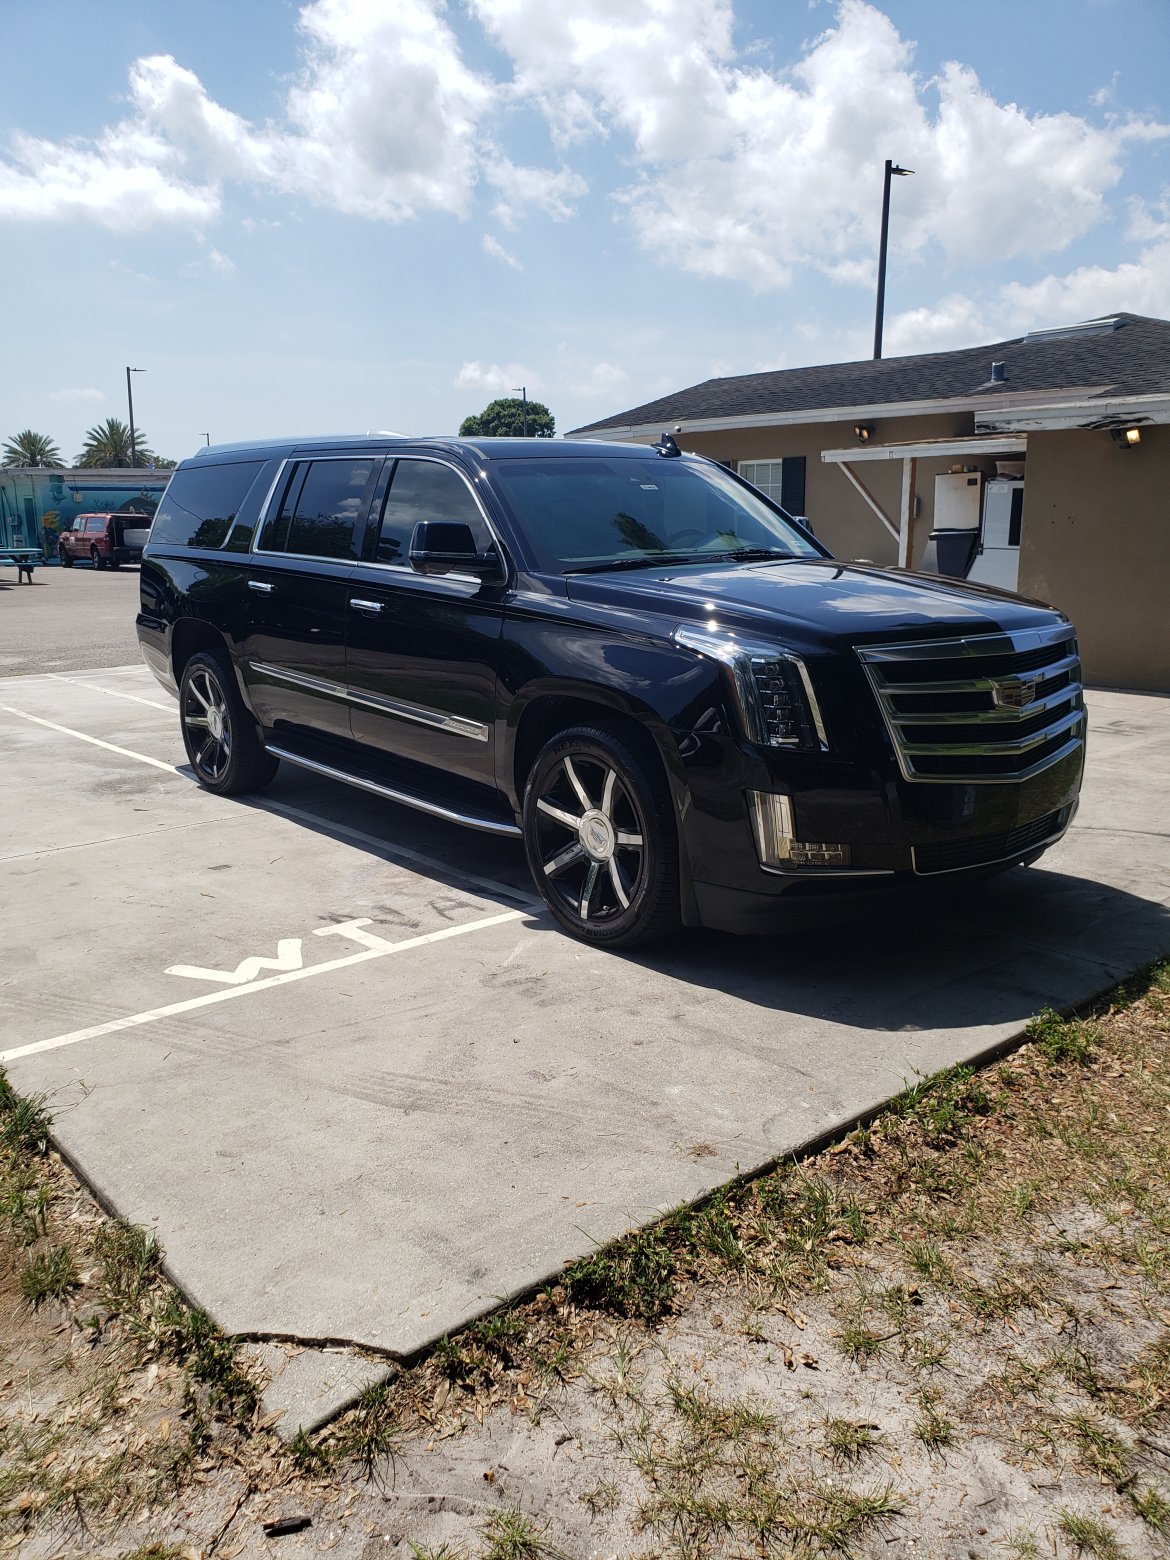 SUV for sale: 2015 Cadillac Escalade ESV